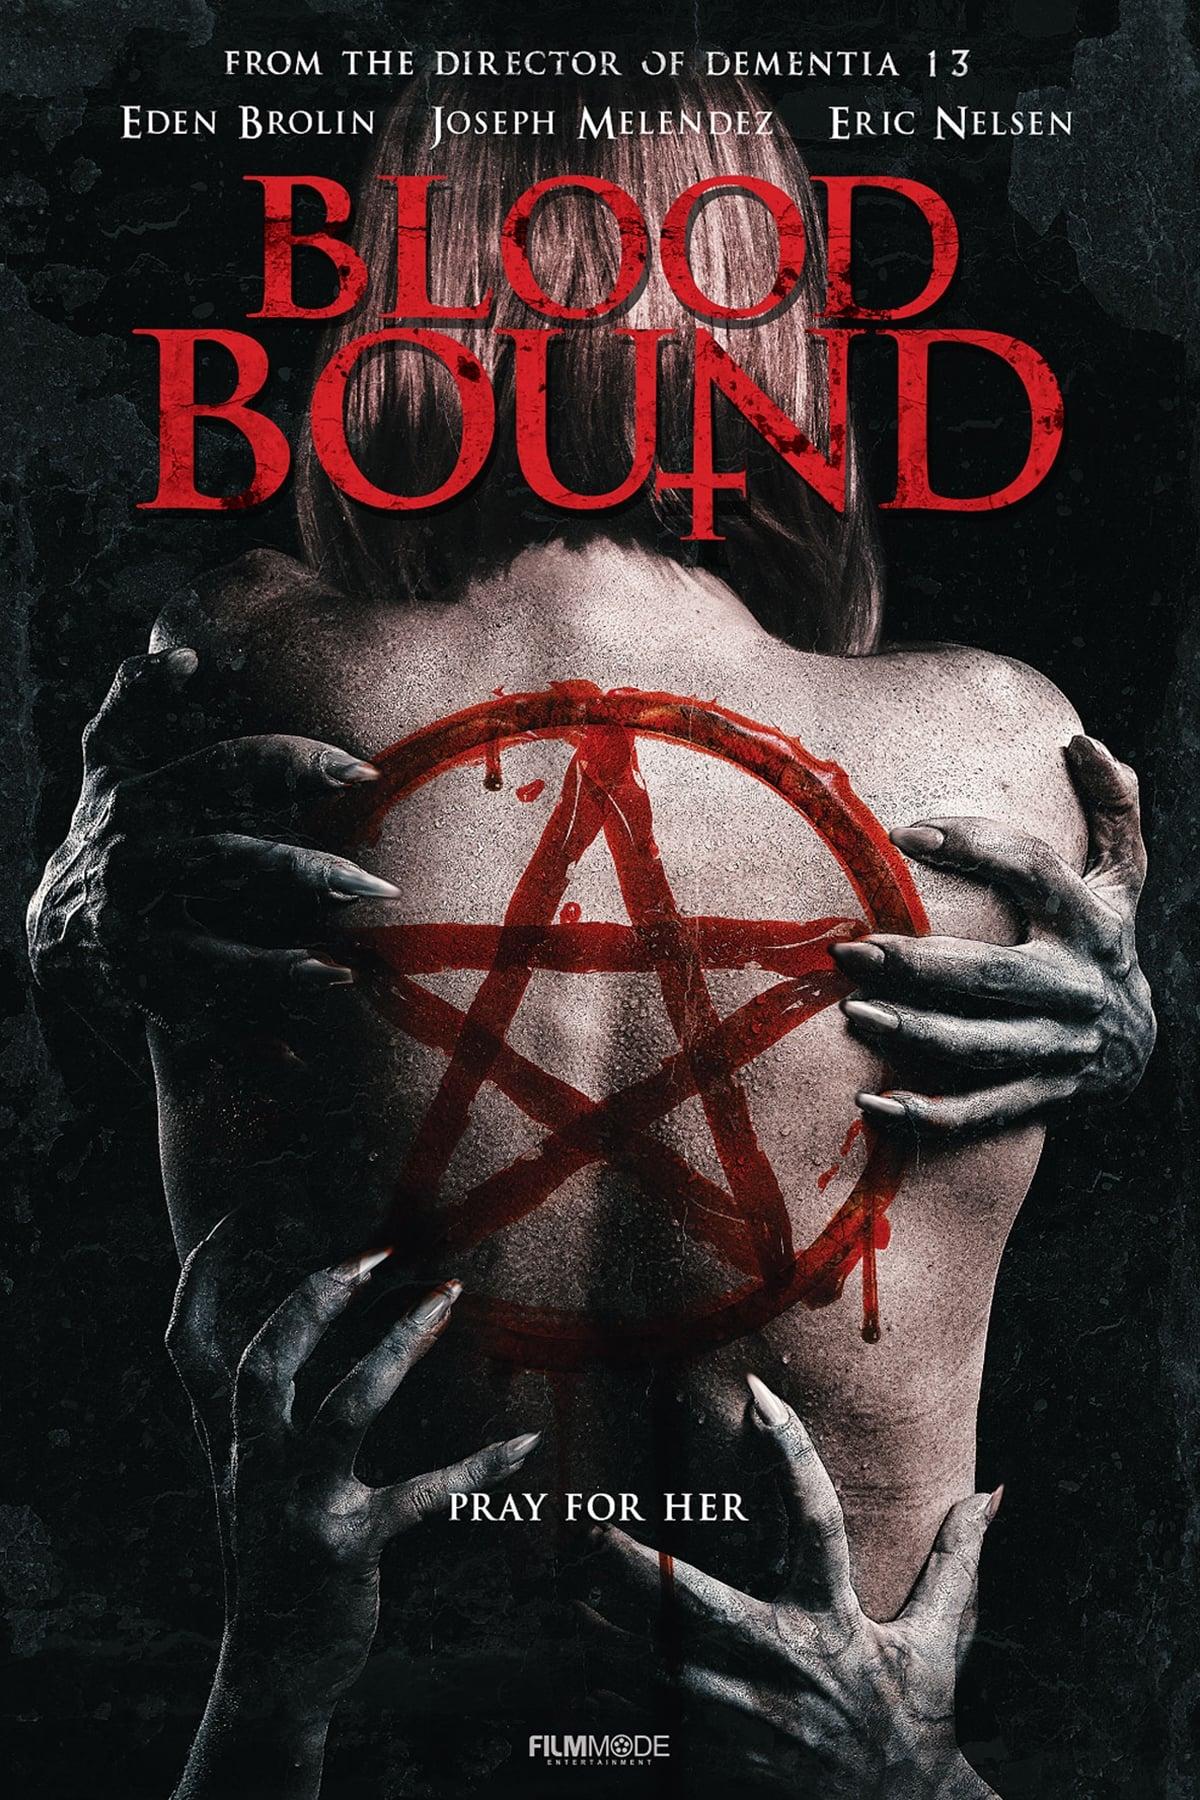 Blood Bound poster